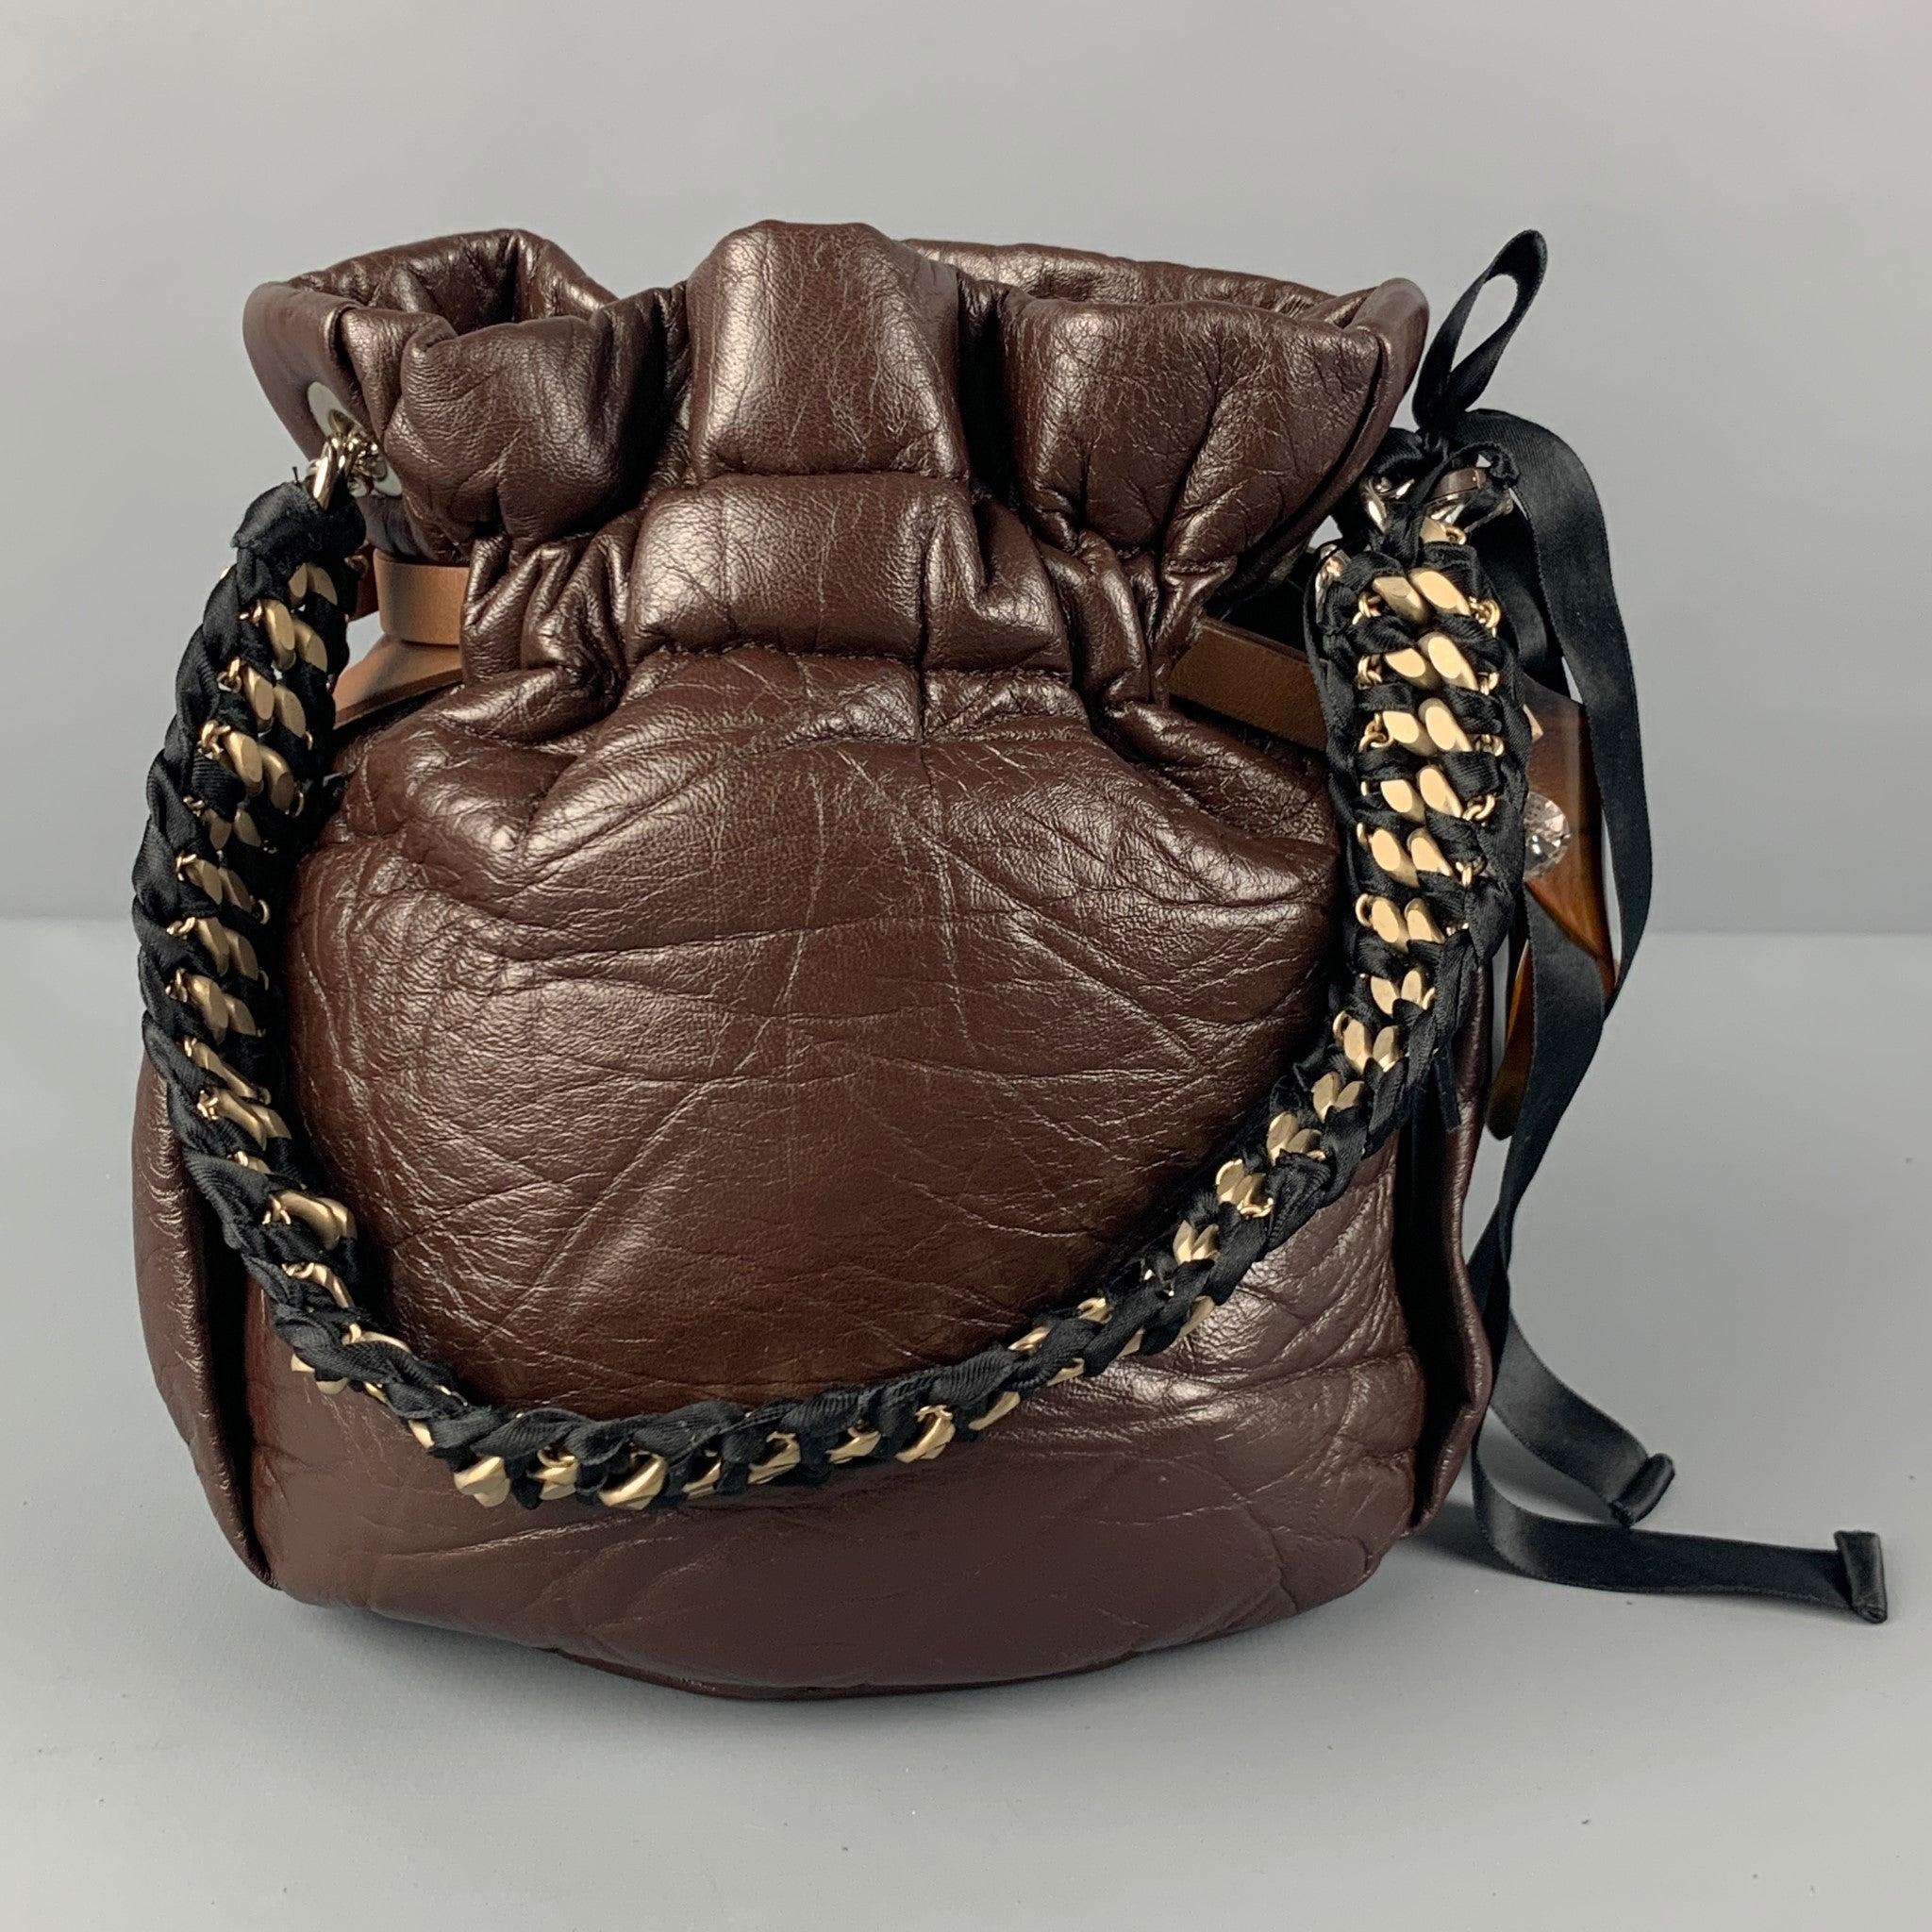 Le sac à main MARNI est en cuir marron froissé et présente un détail de charme, une anse tressée et une fermeture à sangle réglable. Livré avec un sac à poussière. Fabriqué en Italie.
Etat d'occasion. 

Mesures : 
  Longueur : 7,5 pouces  Largeur :